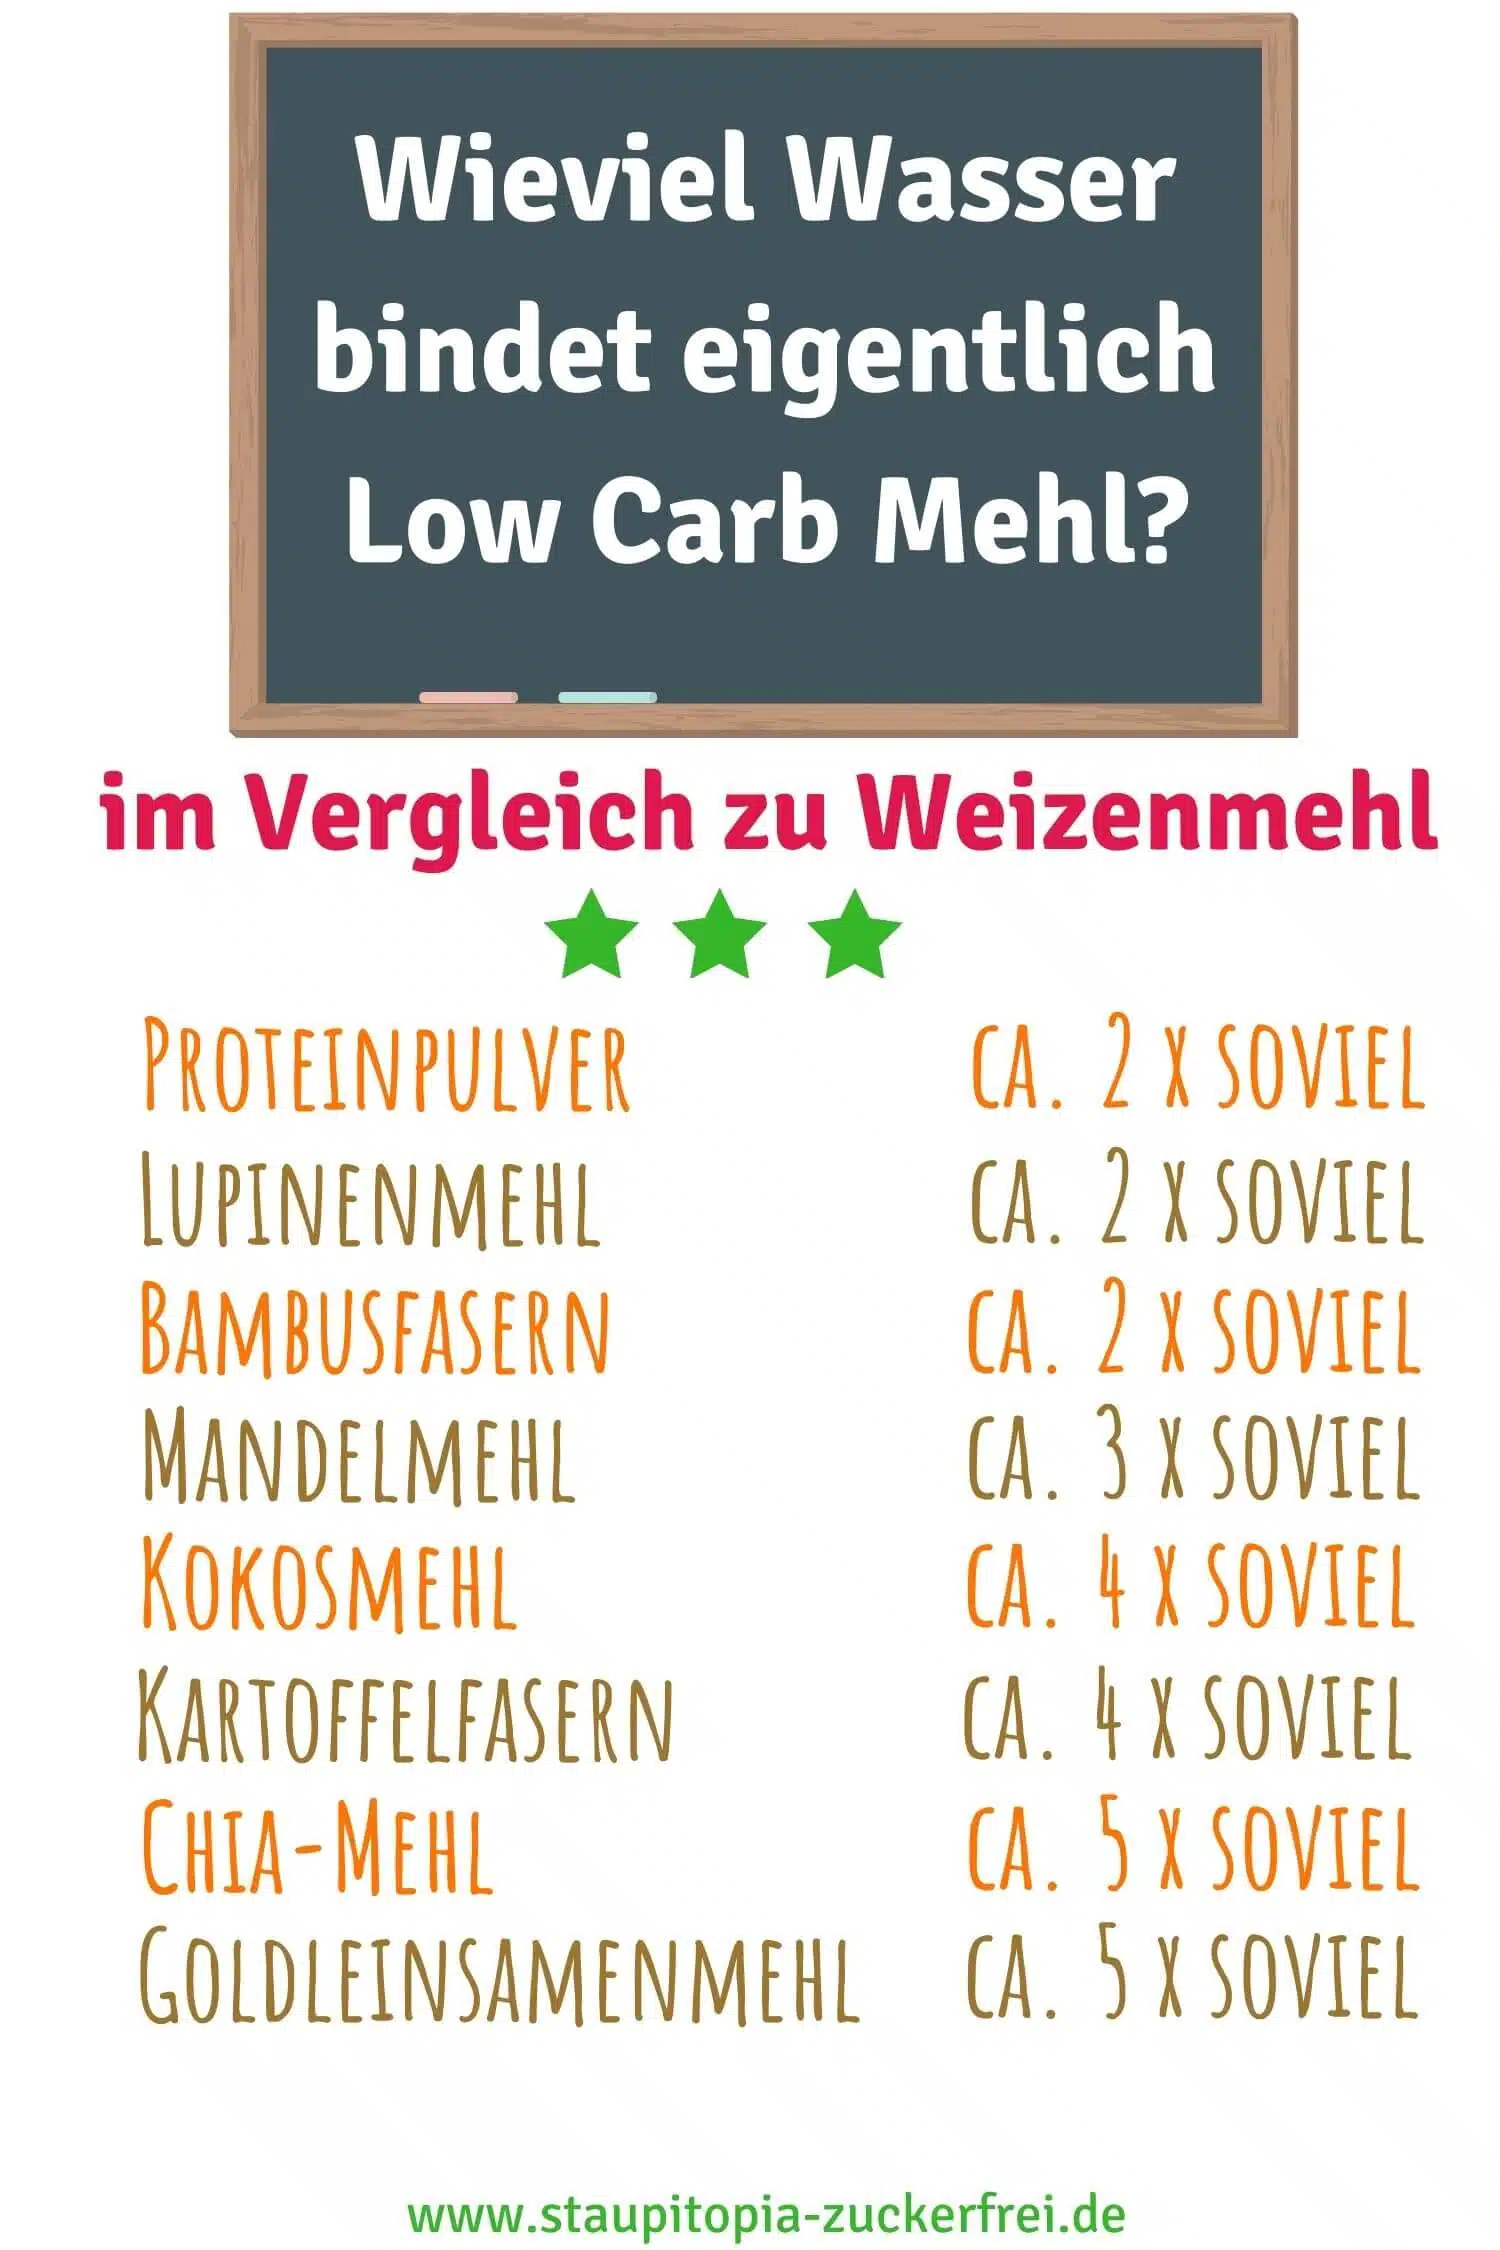 Wieviel Wasser bindet Low Carb Mehl im Vergleich zu Weizenmehl?